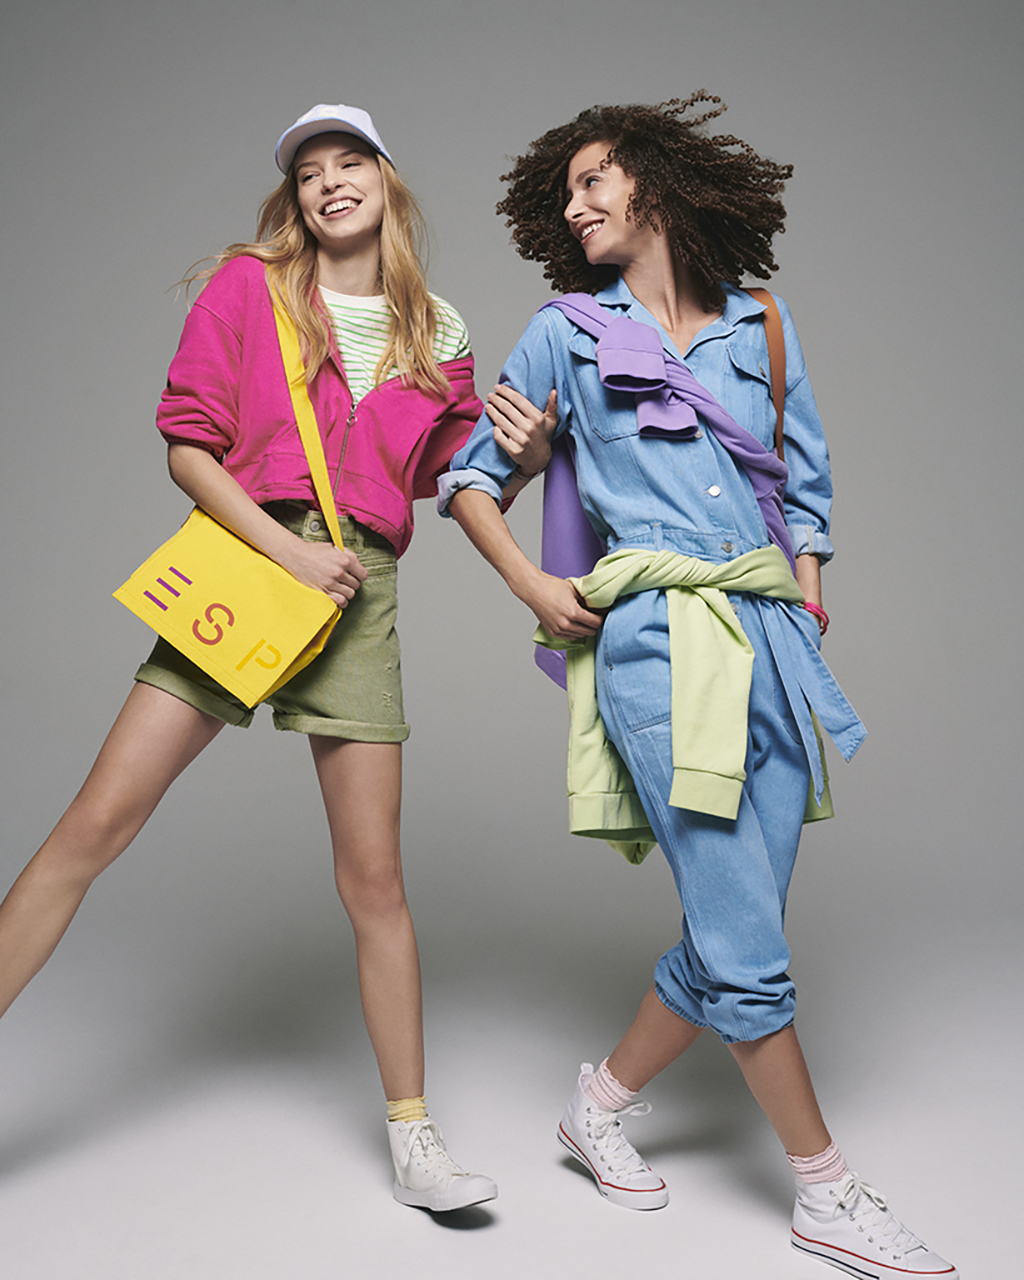 Esprit presenta su nueva colección y campaña primavera-verano 2022: “Create Joy”